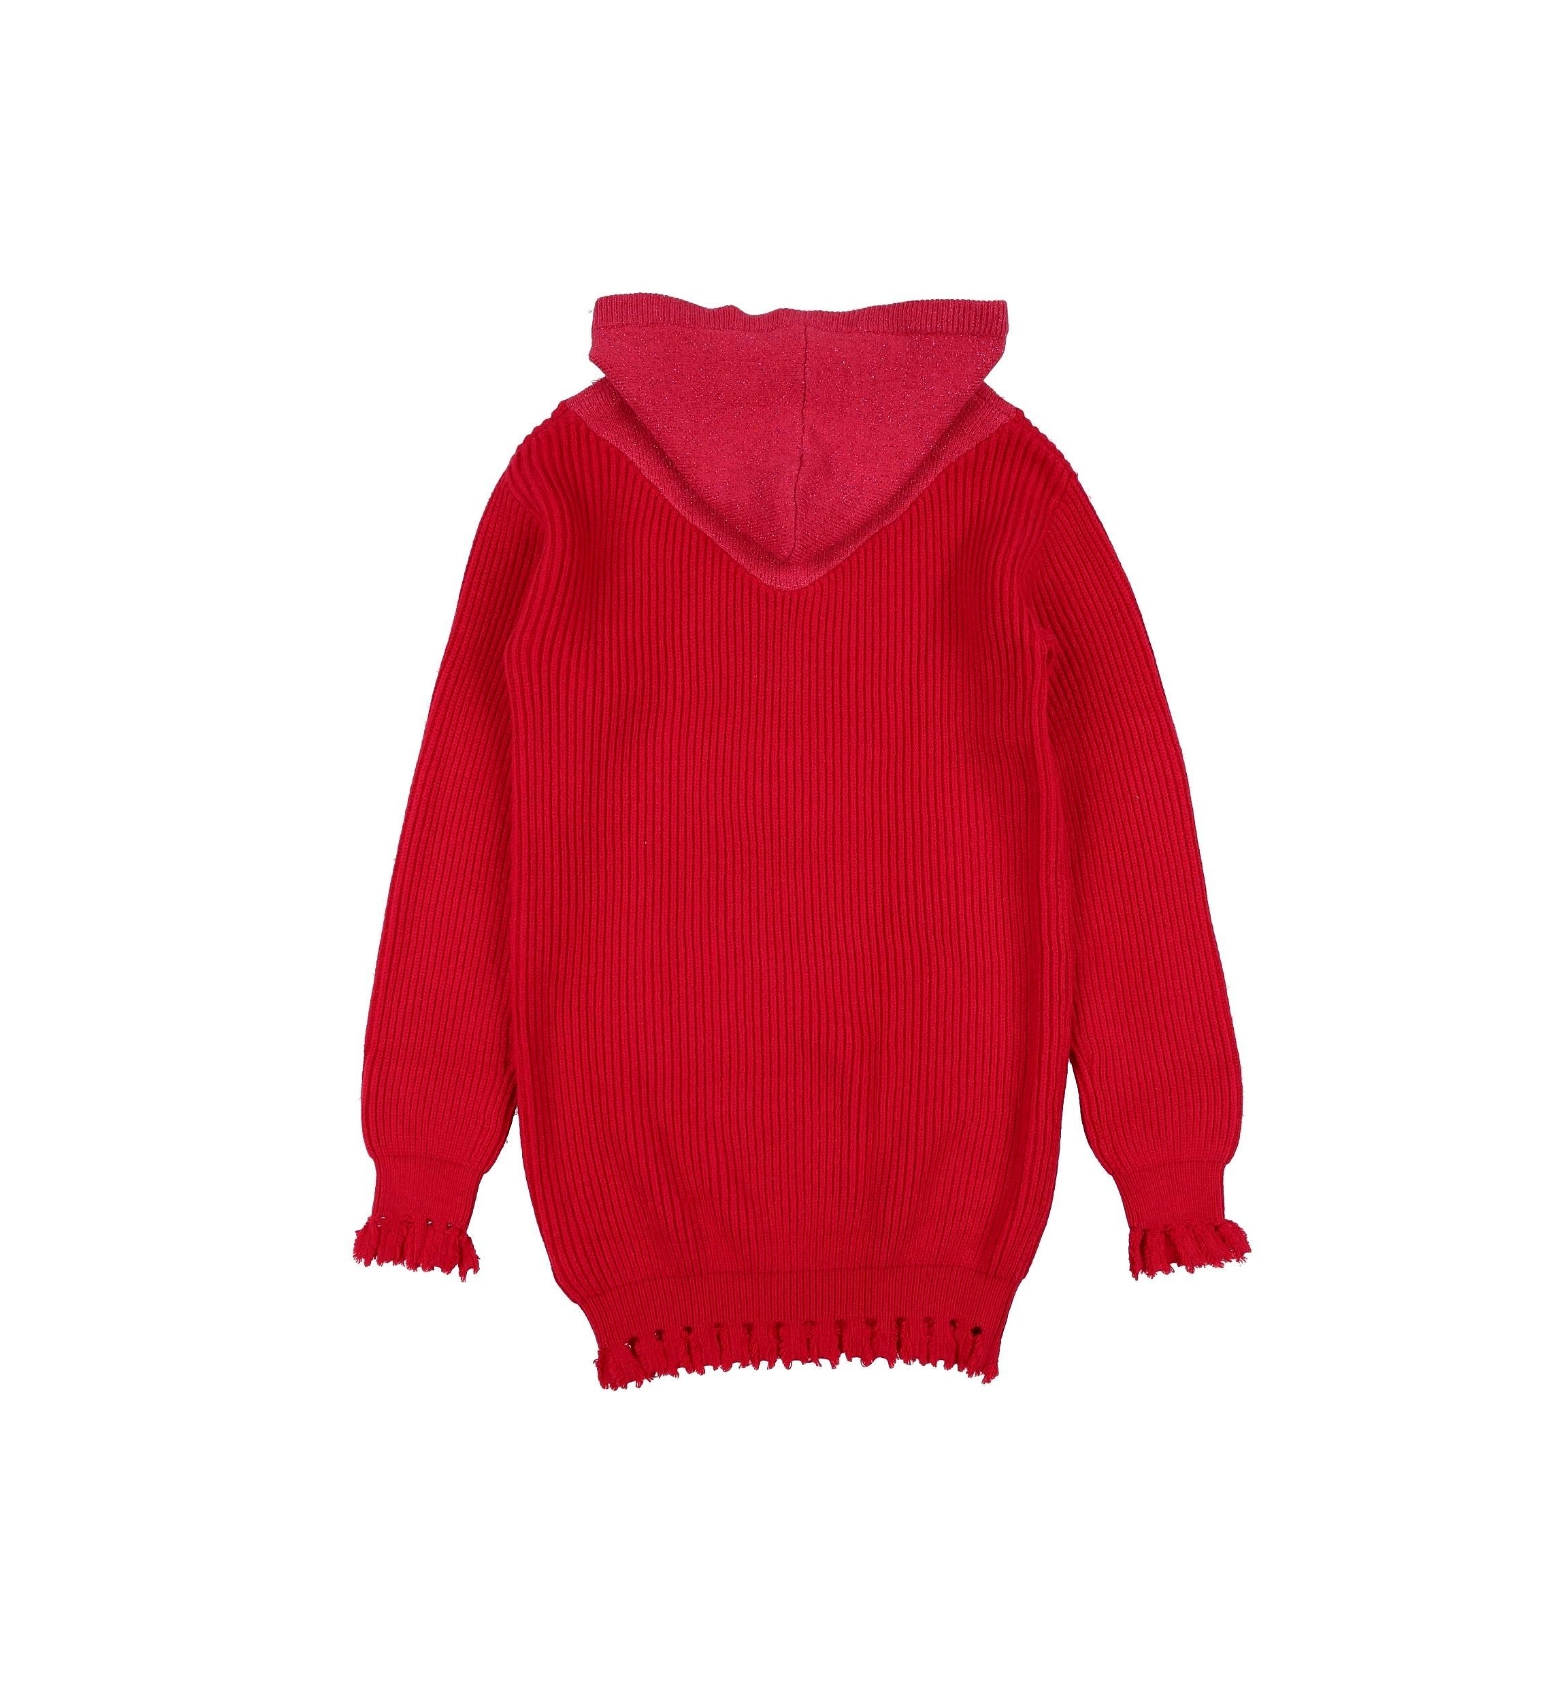 FUN &amp; FUN - Red sweater dress - 8 years old